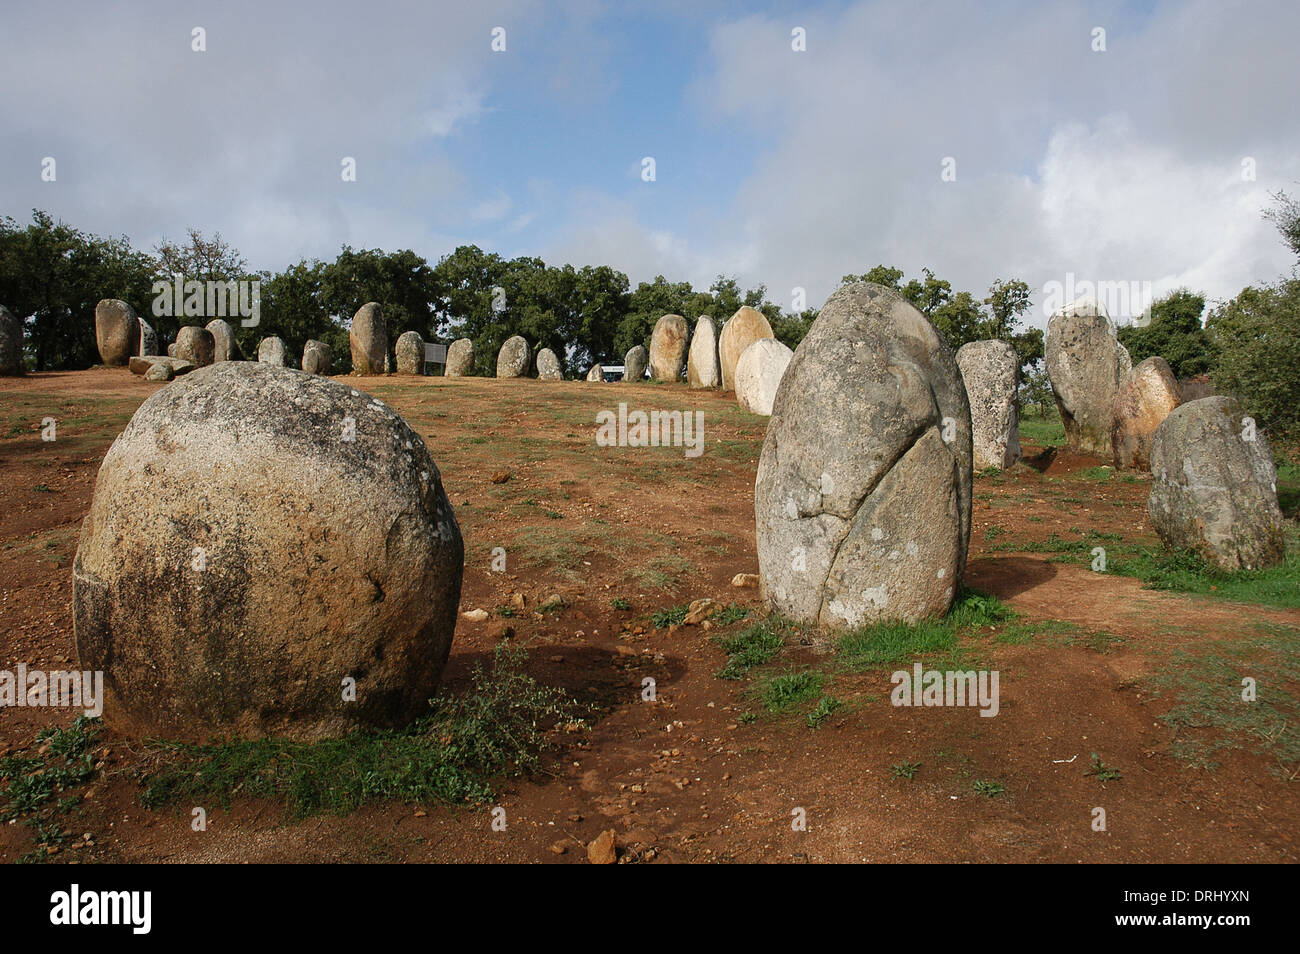 Portugal. Cerca de la ciudad de Evora. El cromlech de los Almendres. Conjunto megalítico: Cromlechs y menhires de piedras. Neolítico. Foto de stock